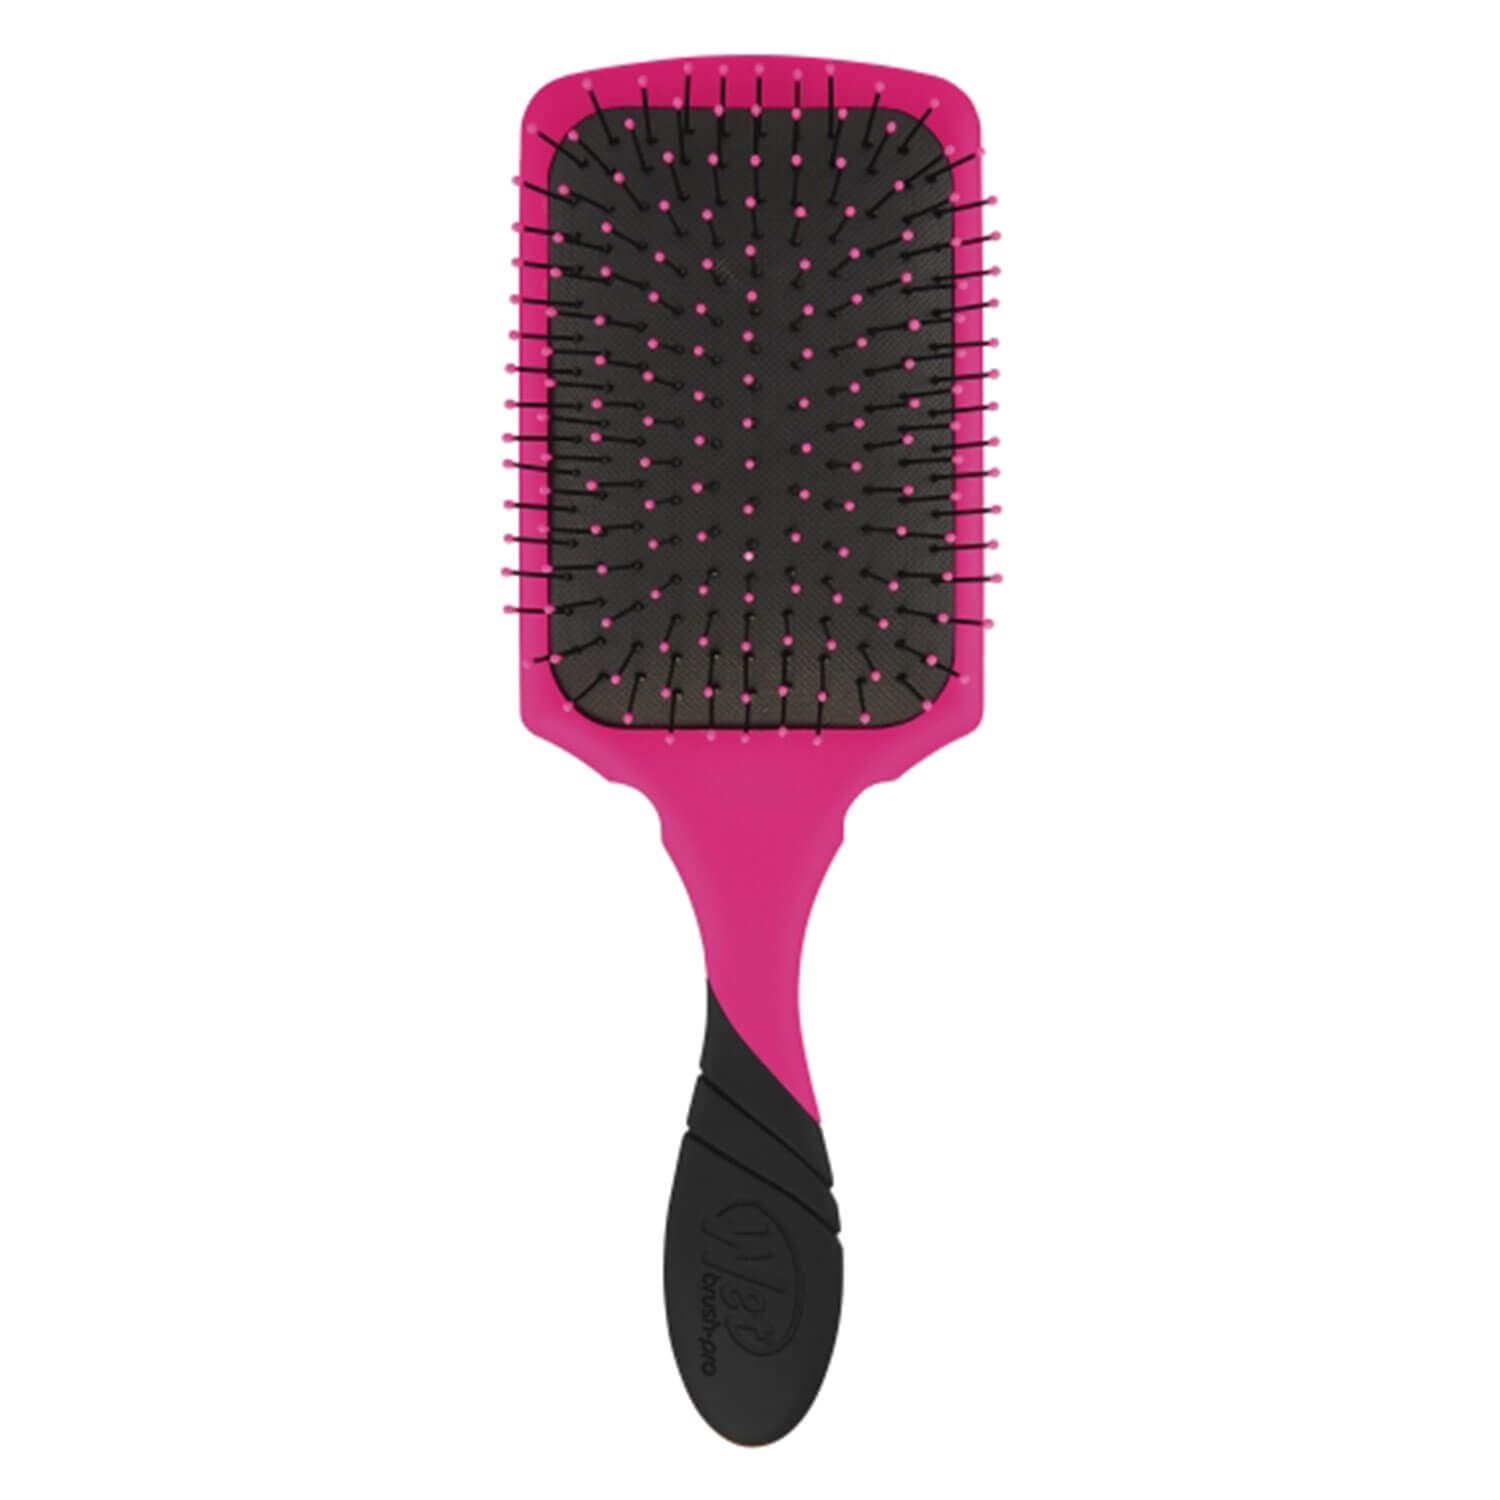 Produktbild von Wet Brush - Paddle PRO Punchy Pink